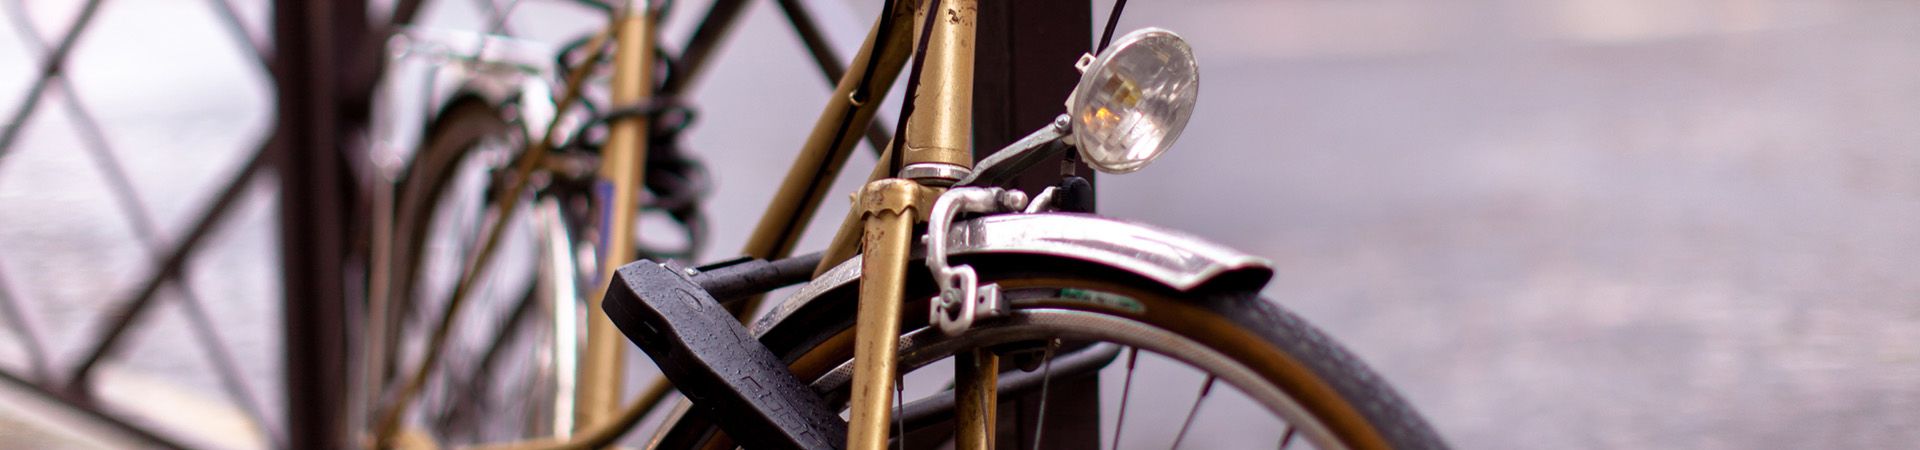 Fahrrad-Diebstahlschutz – sichere Fahrradschlösser schützen vor Diebstahl.